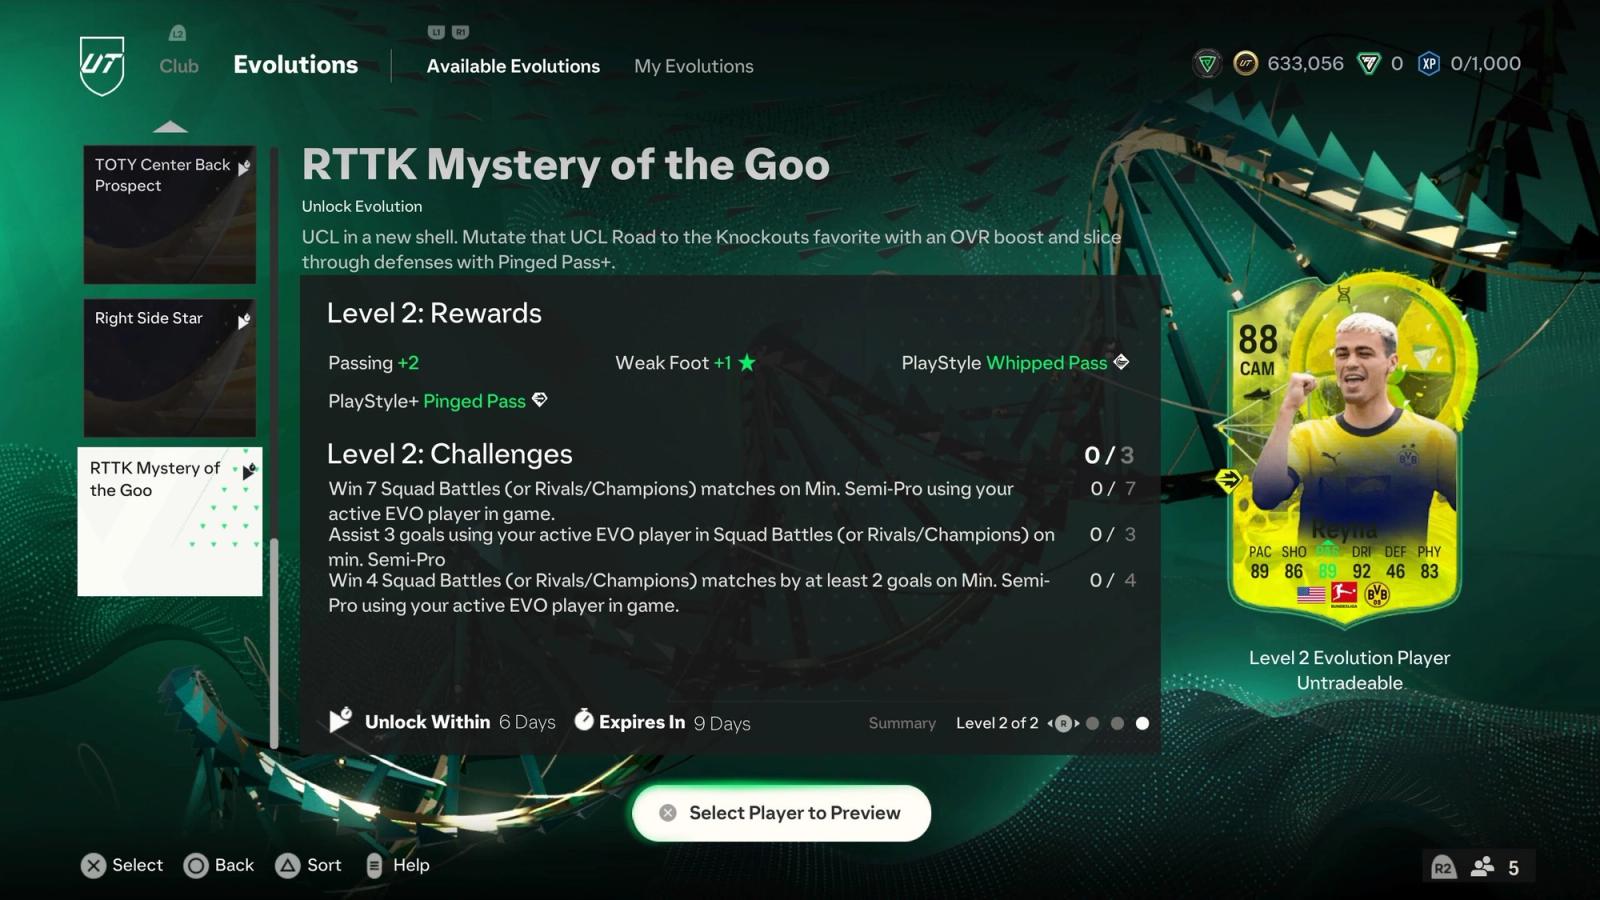 RTTK Mystery of the Goo Evolution